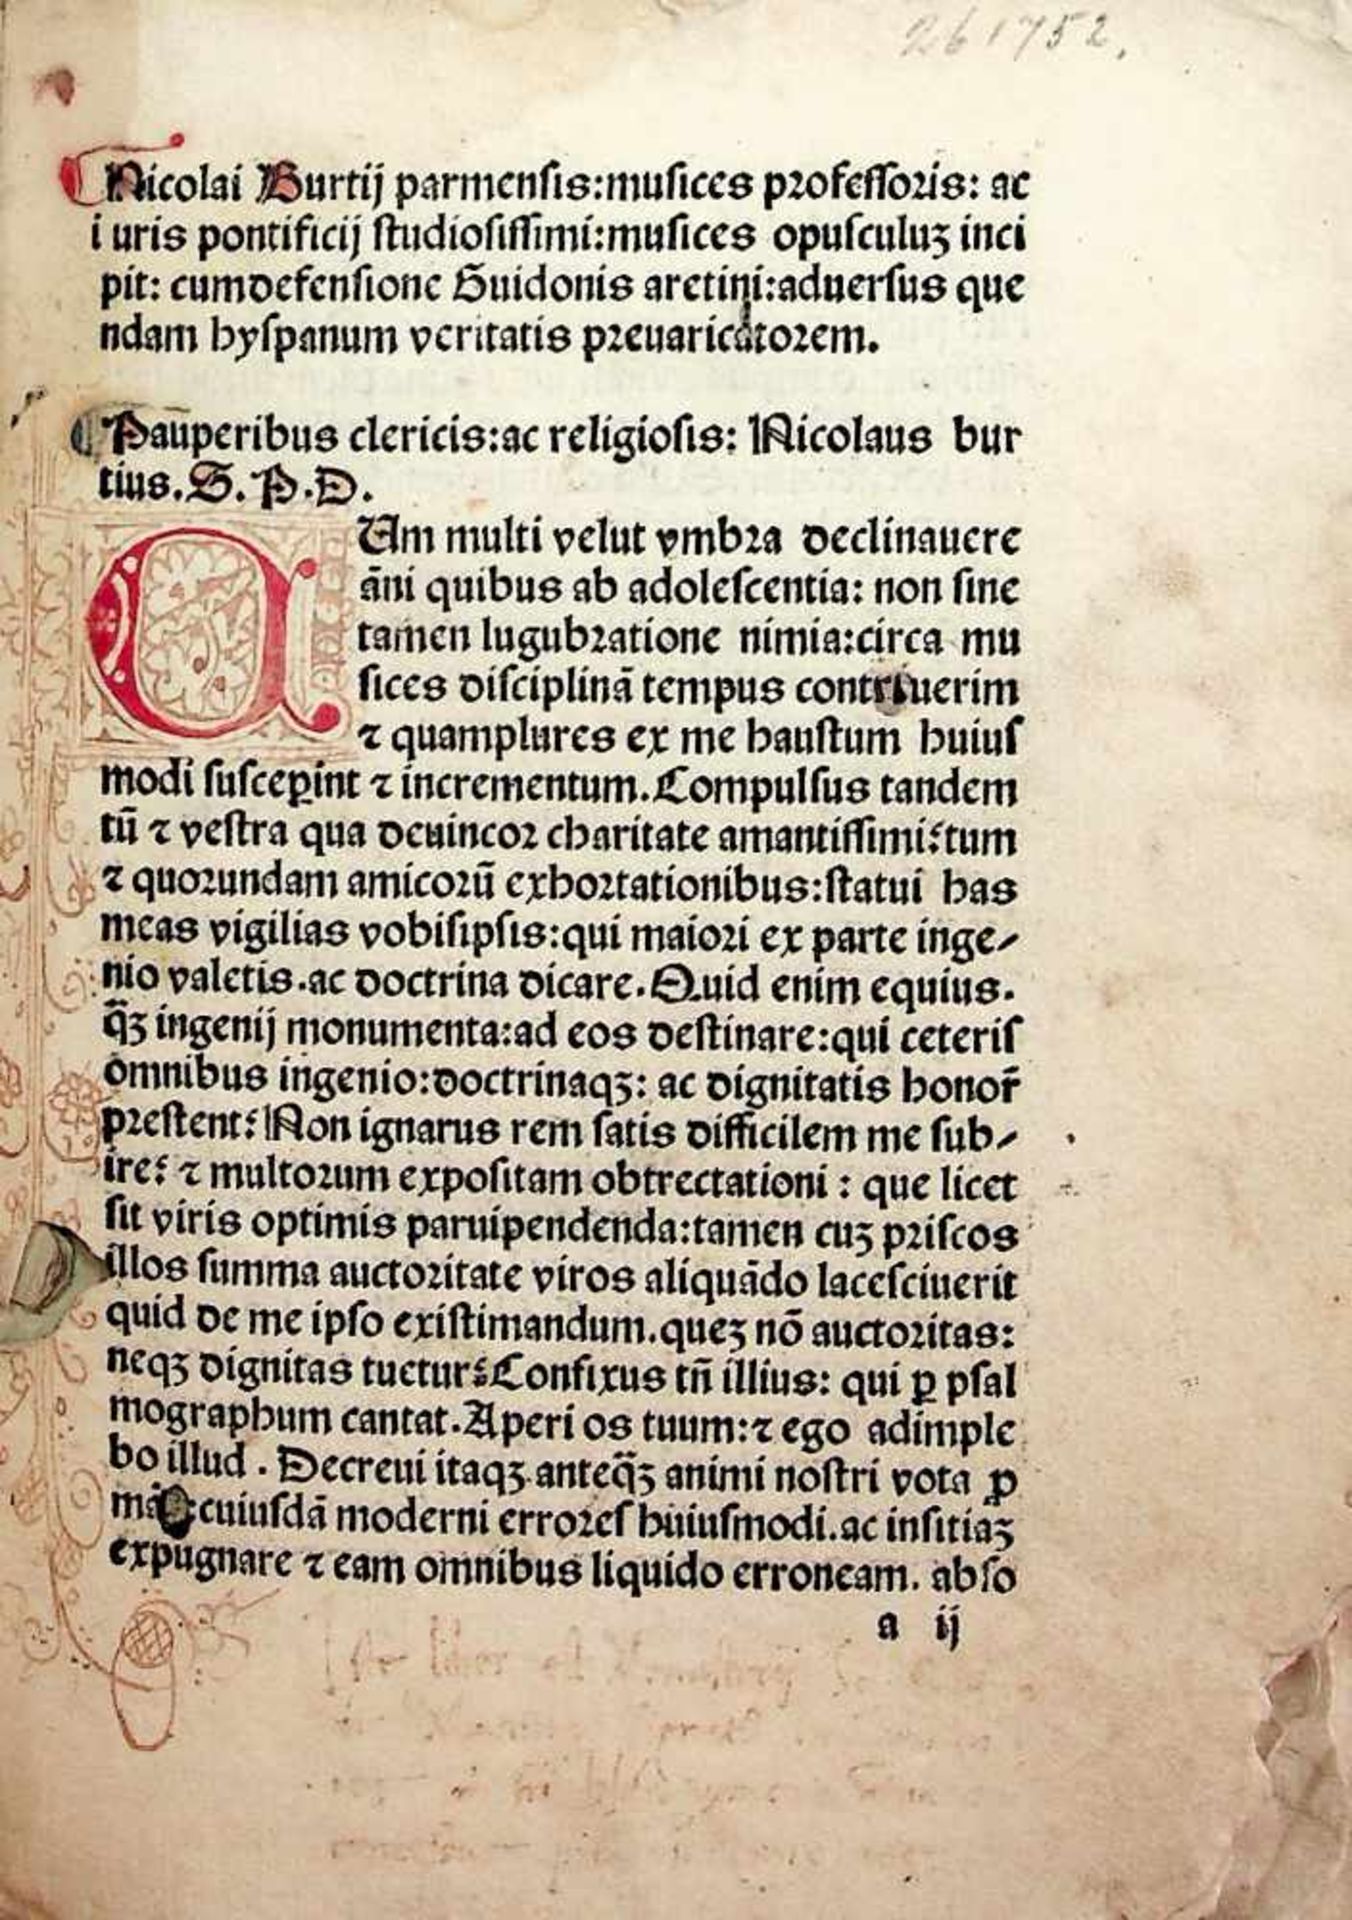 Burtius, Nicolaus.Opusculum musices. Bologna, Ugo Rugerius frBenedictus Hectoris Faelli, 30.IV.